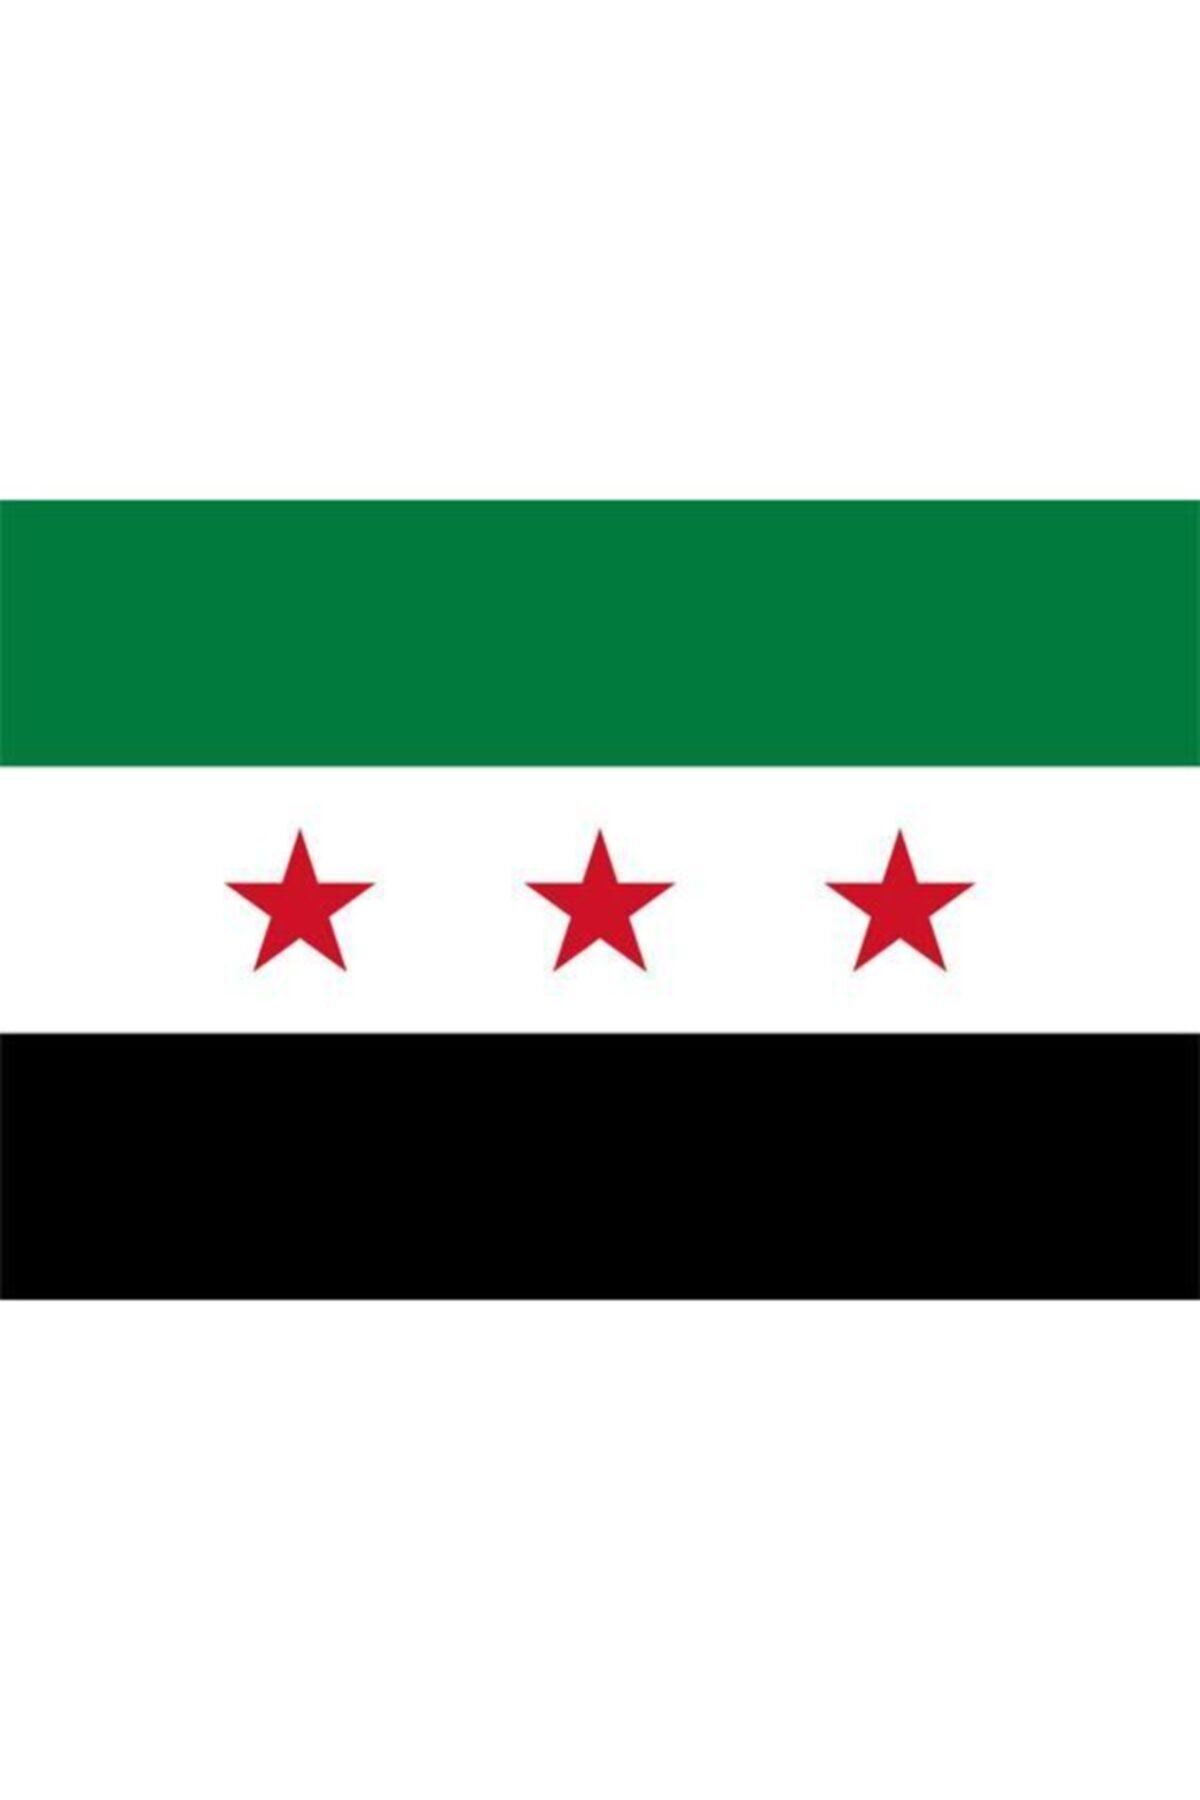 Saturn Masa Üstü Özgür Suriye Bayrağı 15x23cm Masa Bayrağı